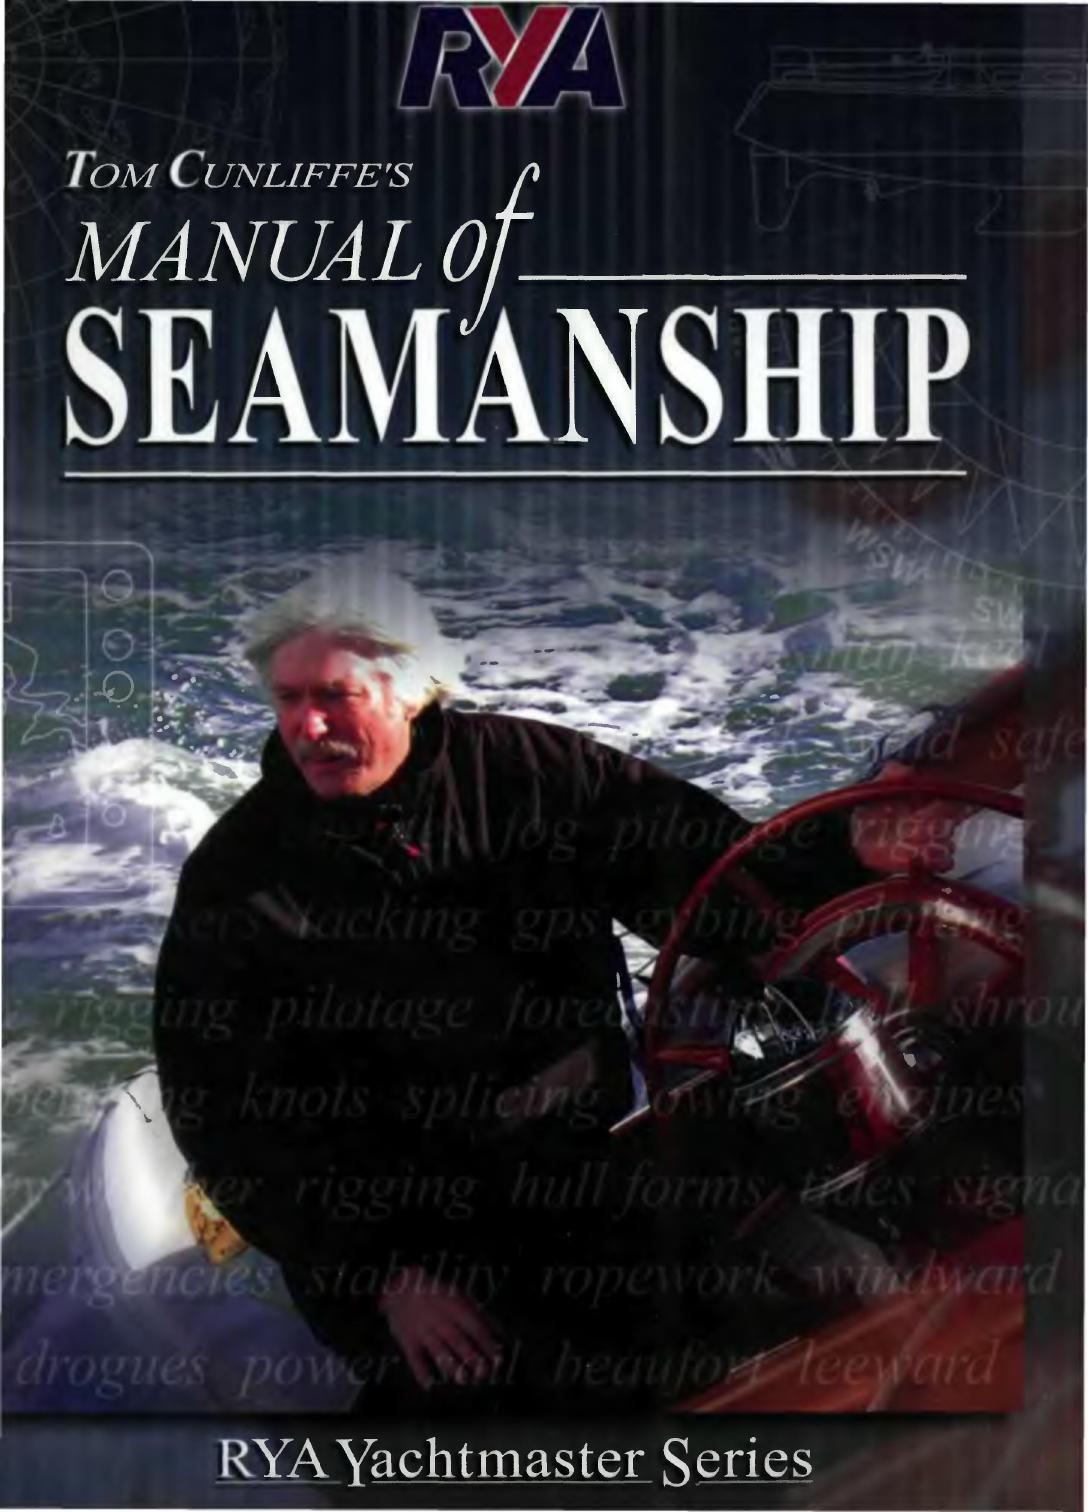 Rya Manual of Seamanship